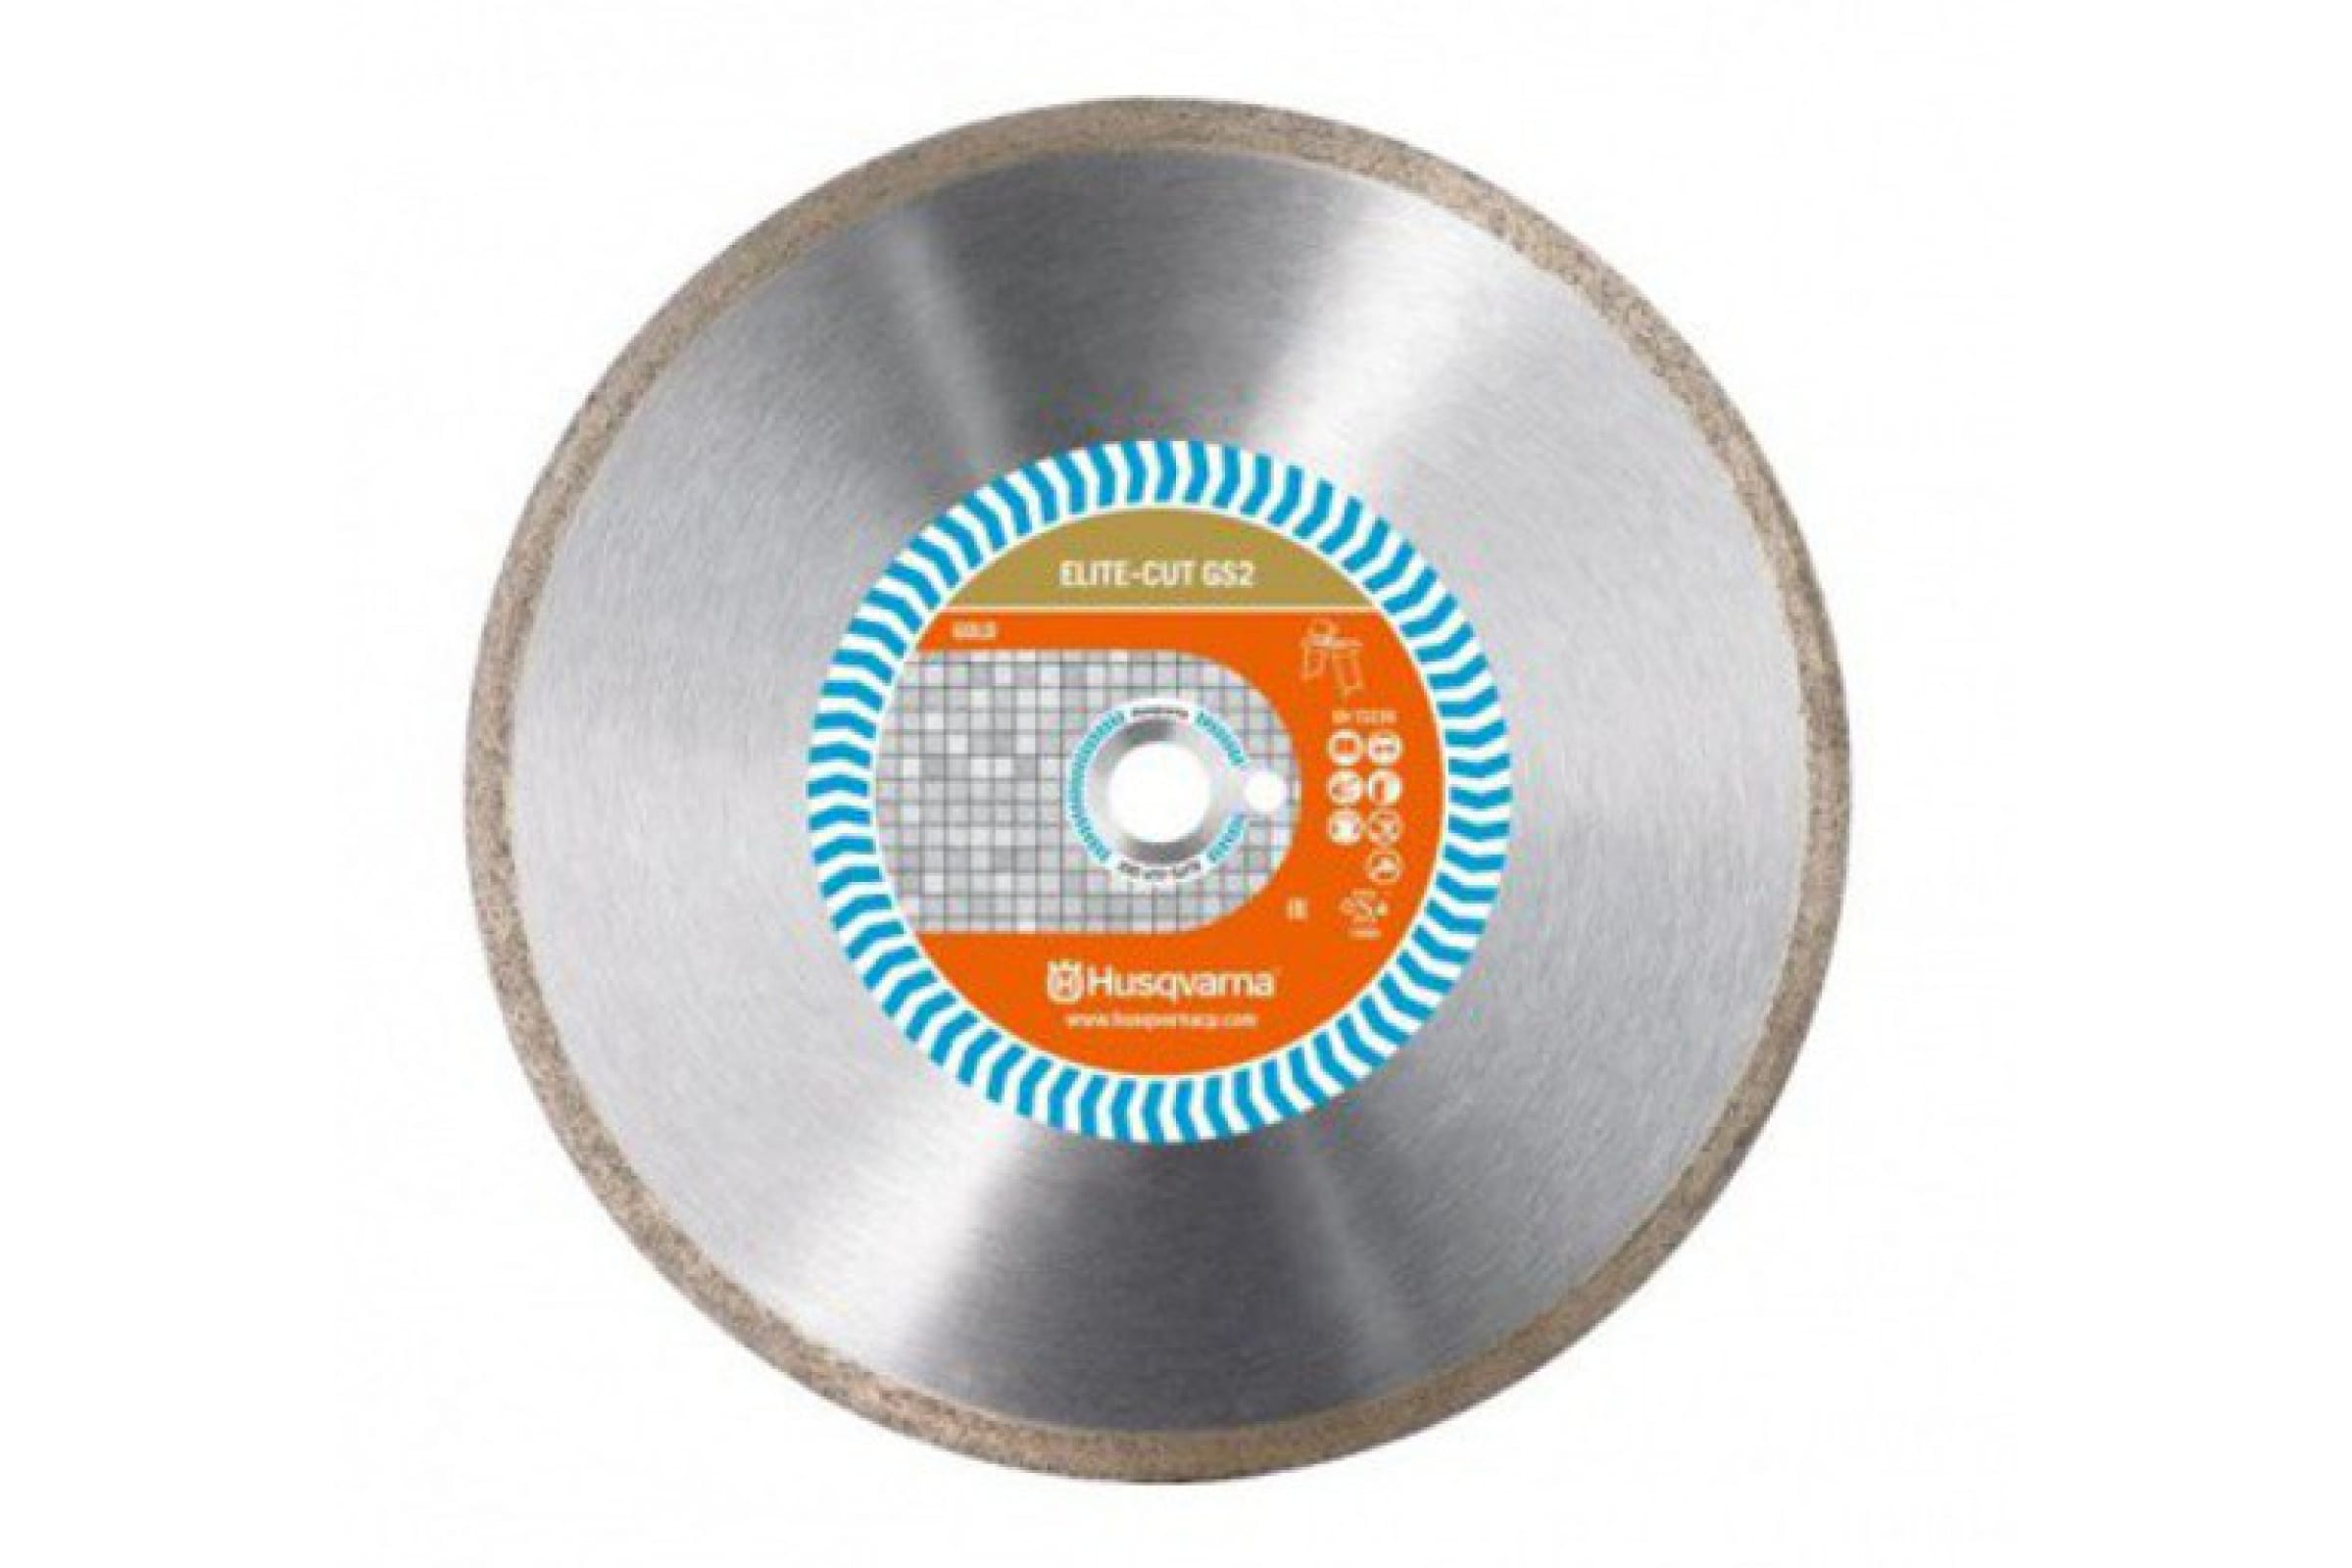 Husqvarna Construction Алмазный диск ELITE-CUTGS2 350 10 25.4 5797981-20 алмазный диск 300х25 4 20 мм husqvarna construction tacti cut s50 5798156 10